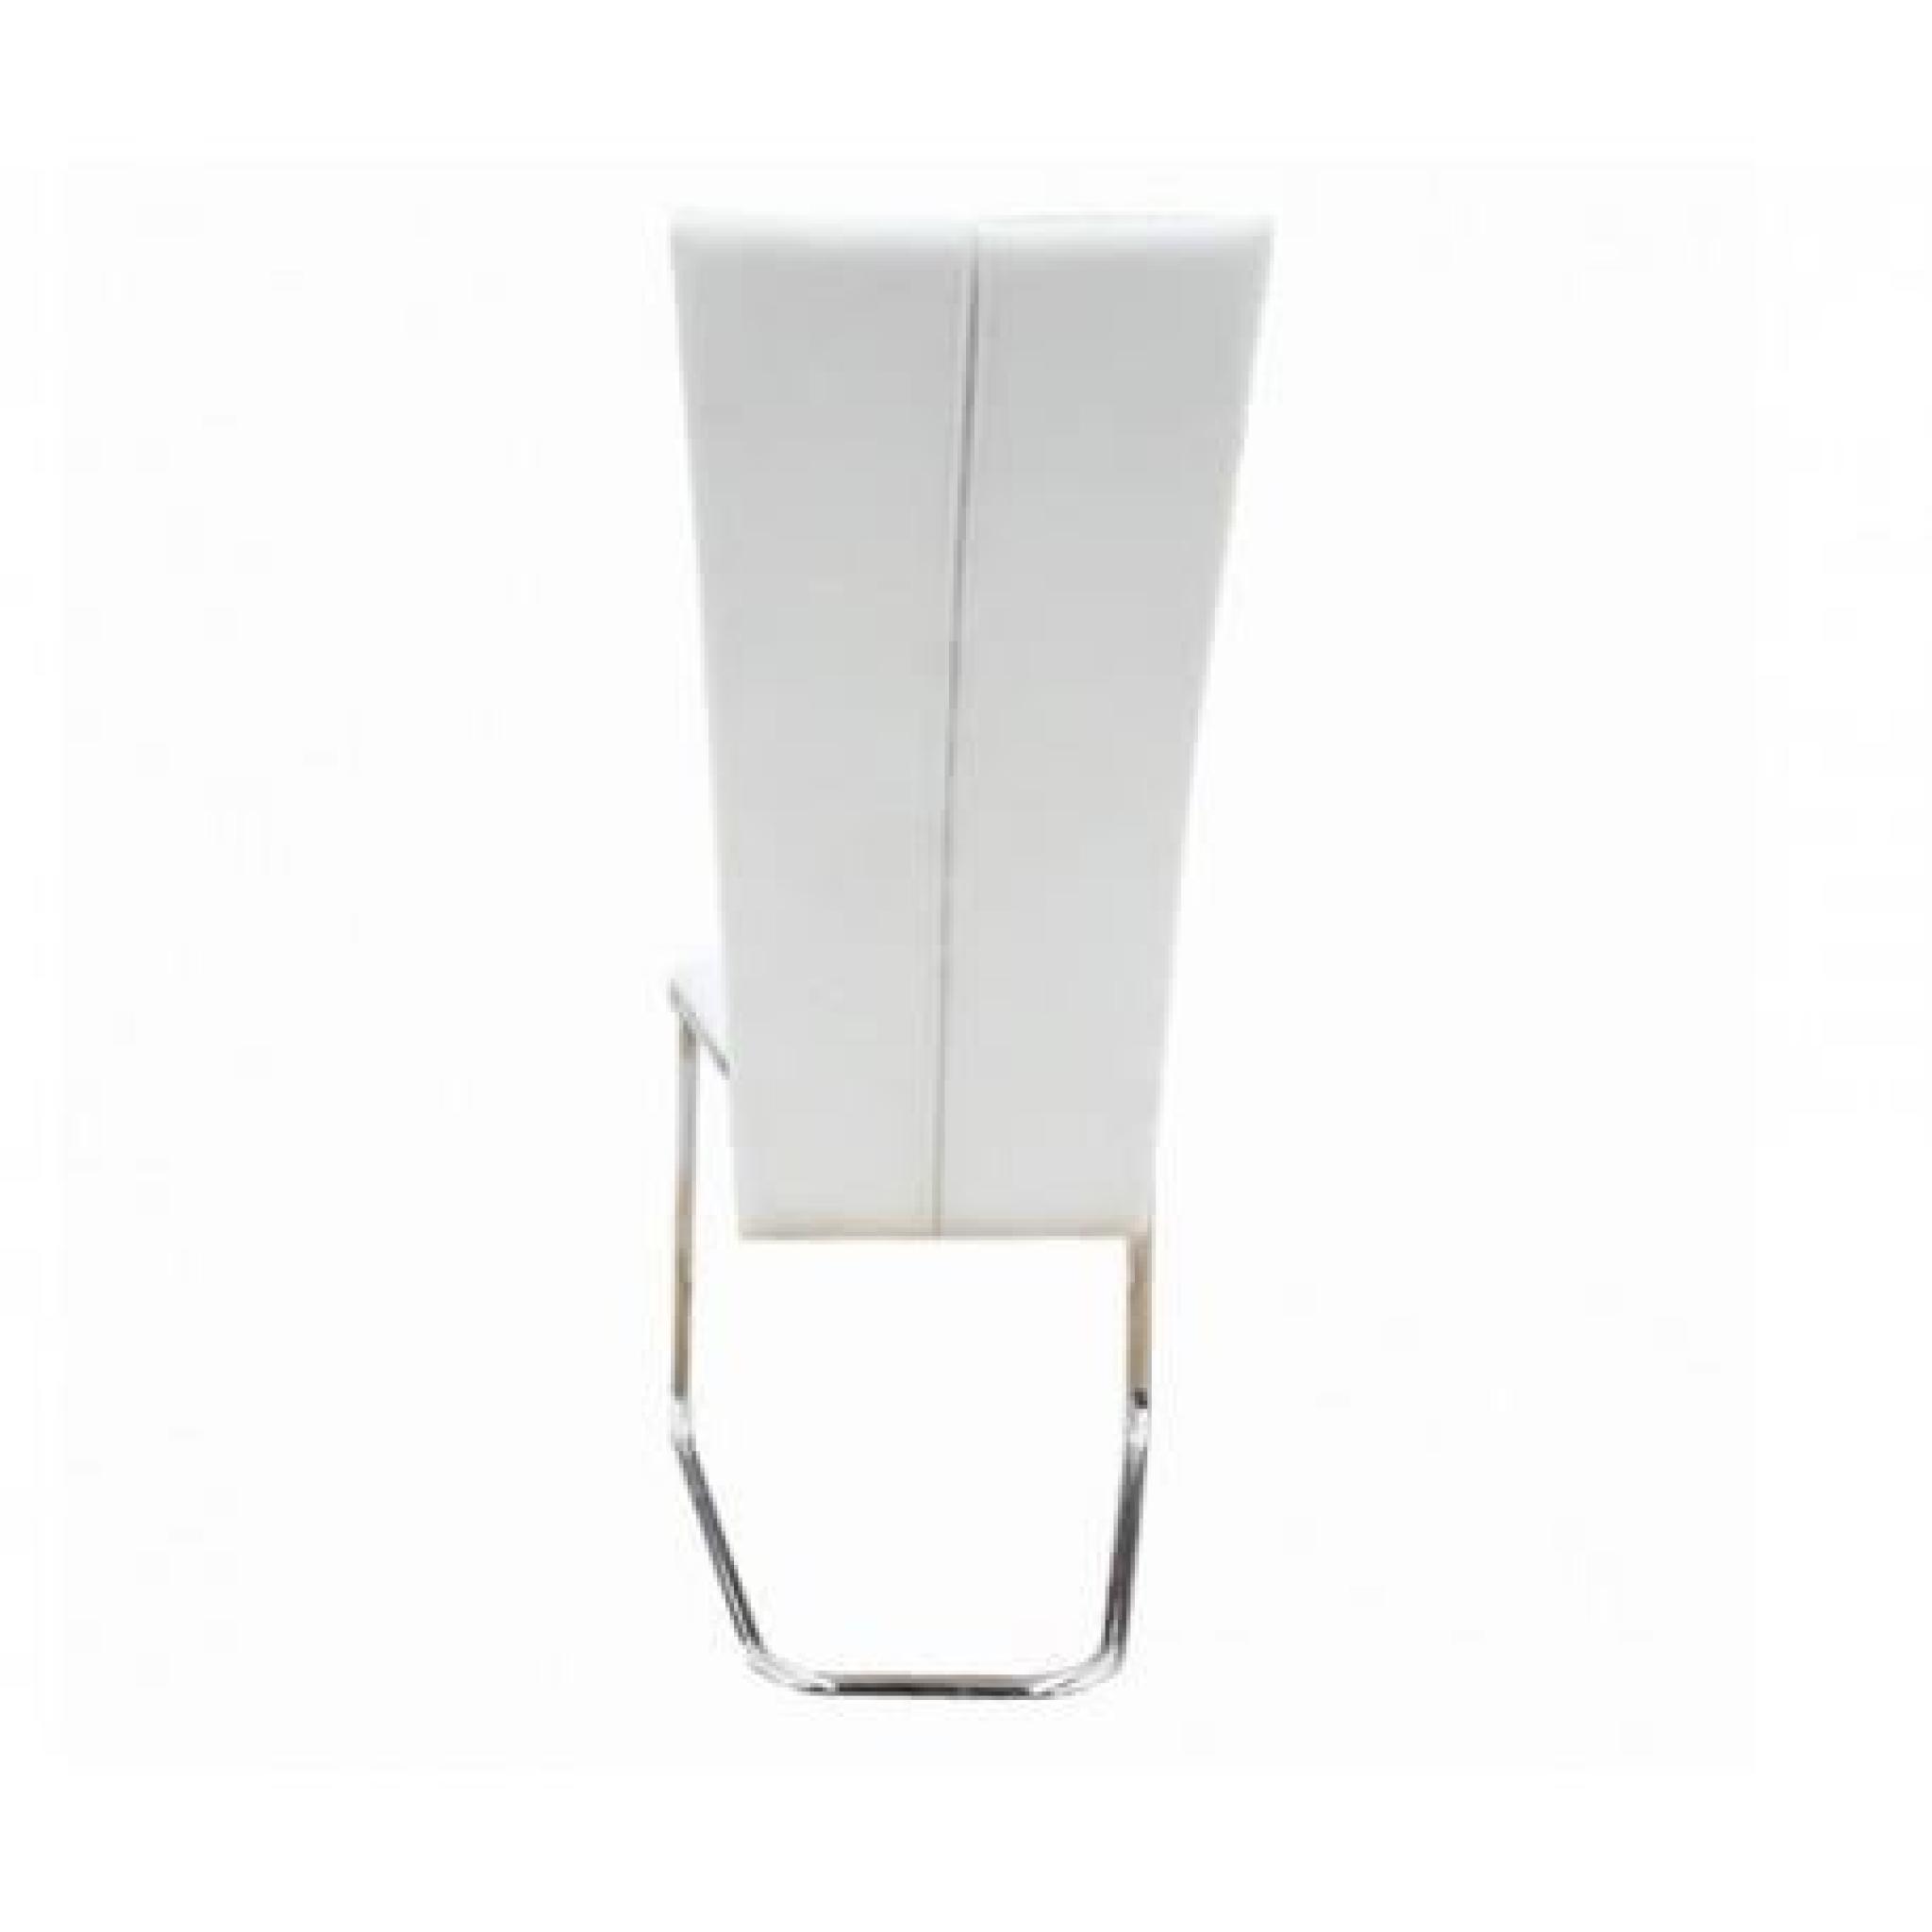 6 Chaises en métal design (Blanc) Maja+ pas cher